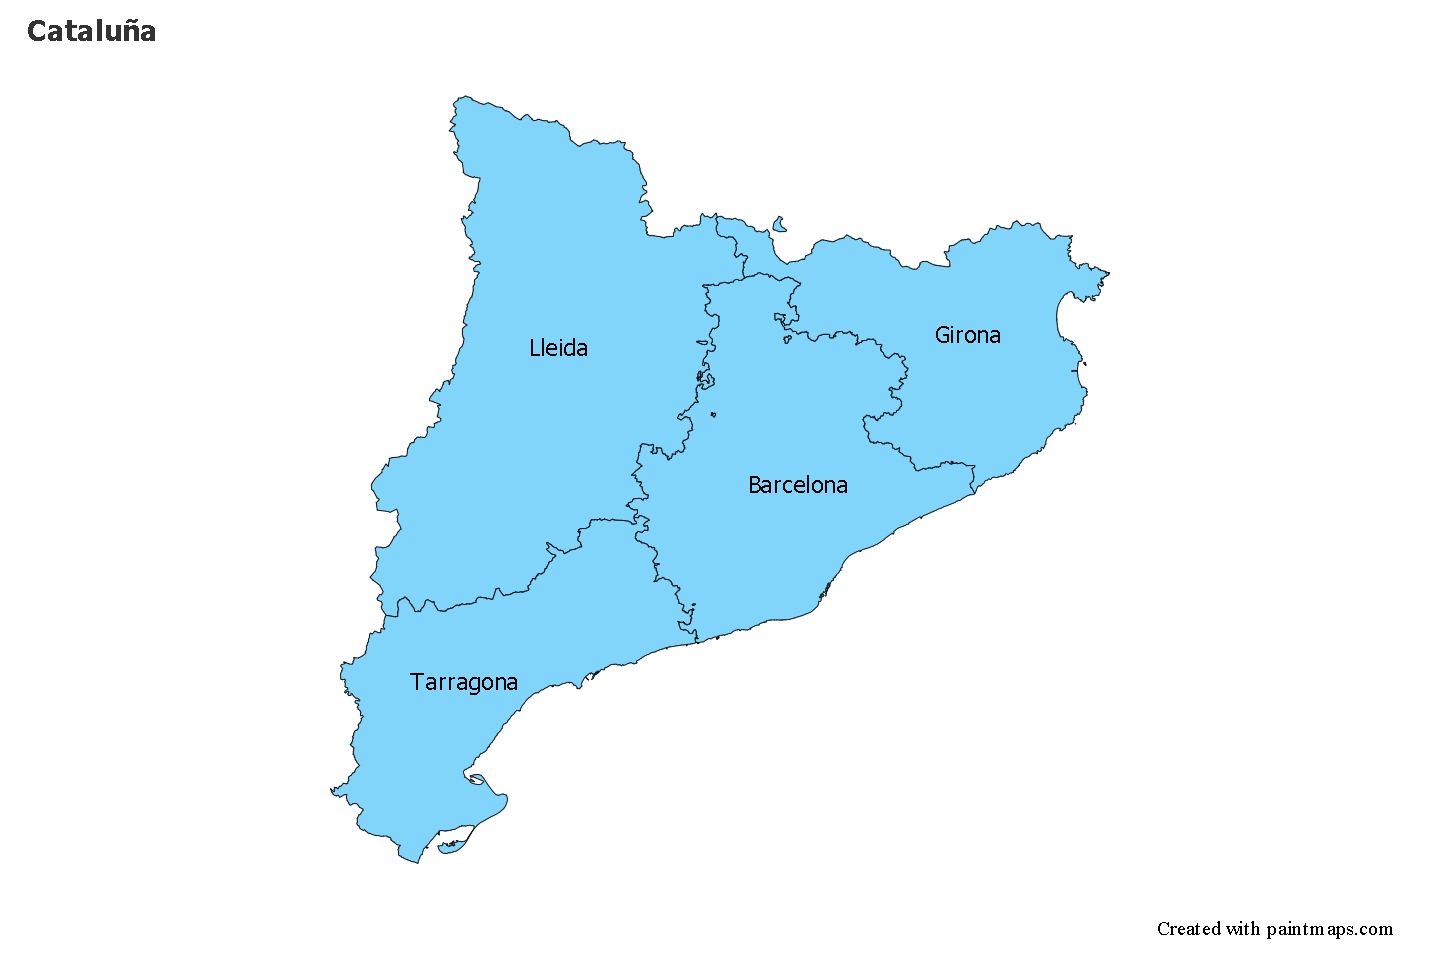 Cuantos habitantes tiene cataluña